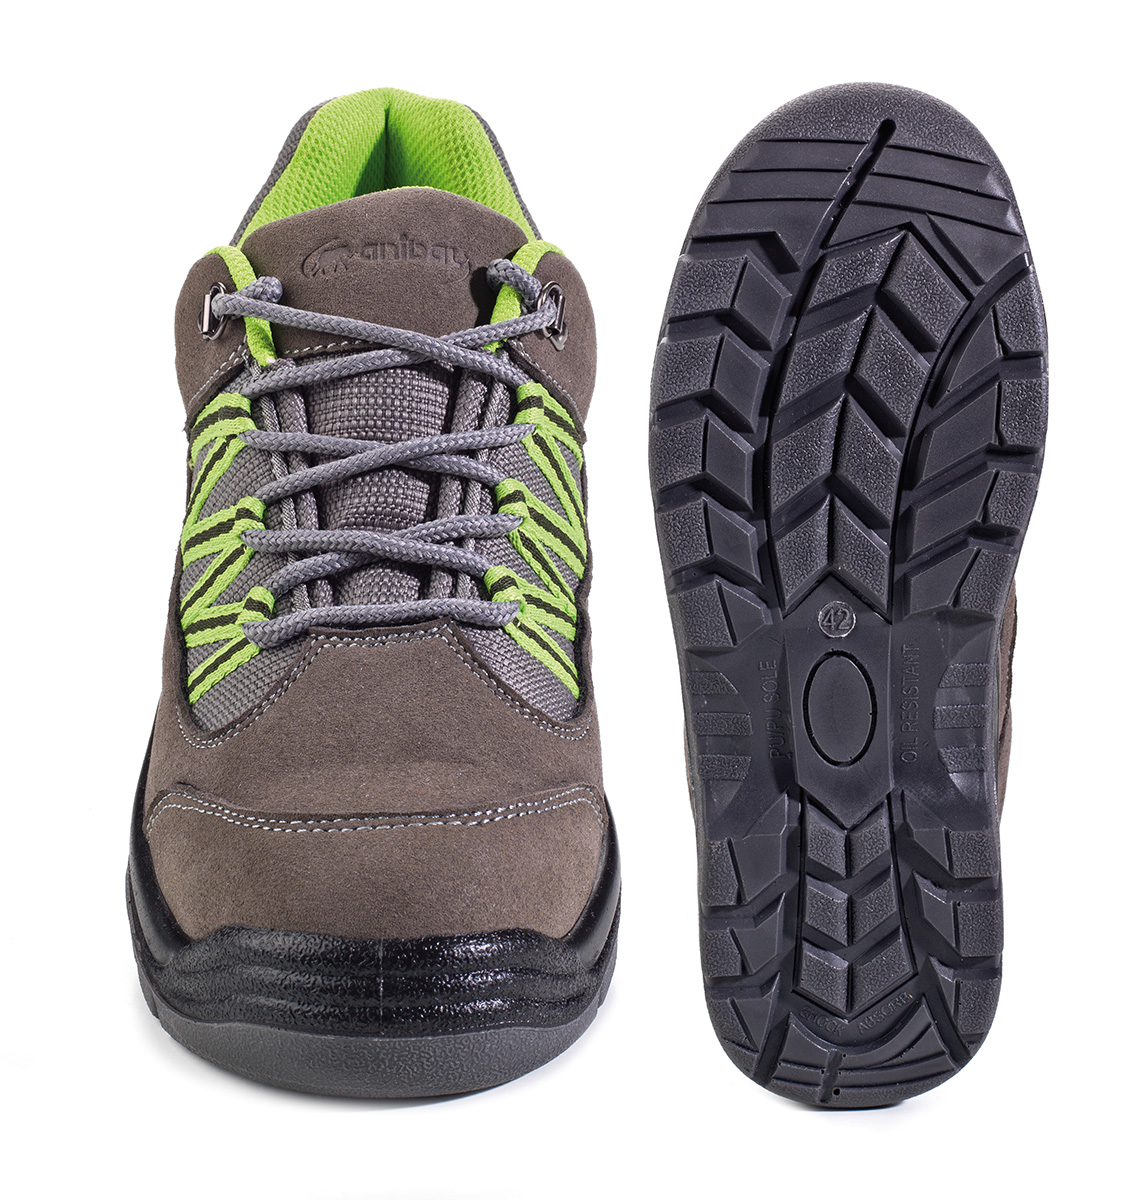 1688-ZAG Calzado de Seguridad Sporty Trekking  Zapato mod. “GARUM”.Zapato tipo Trekking sin protección en microfibra afelpada suela Poliuretano doble densidad SRC.